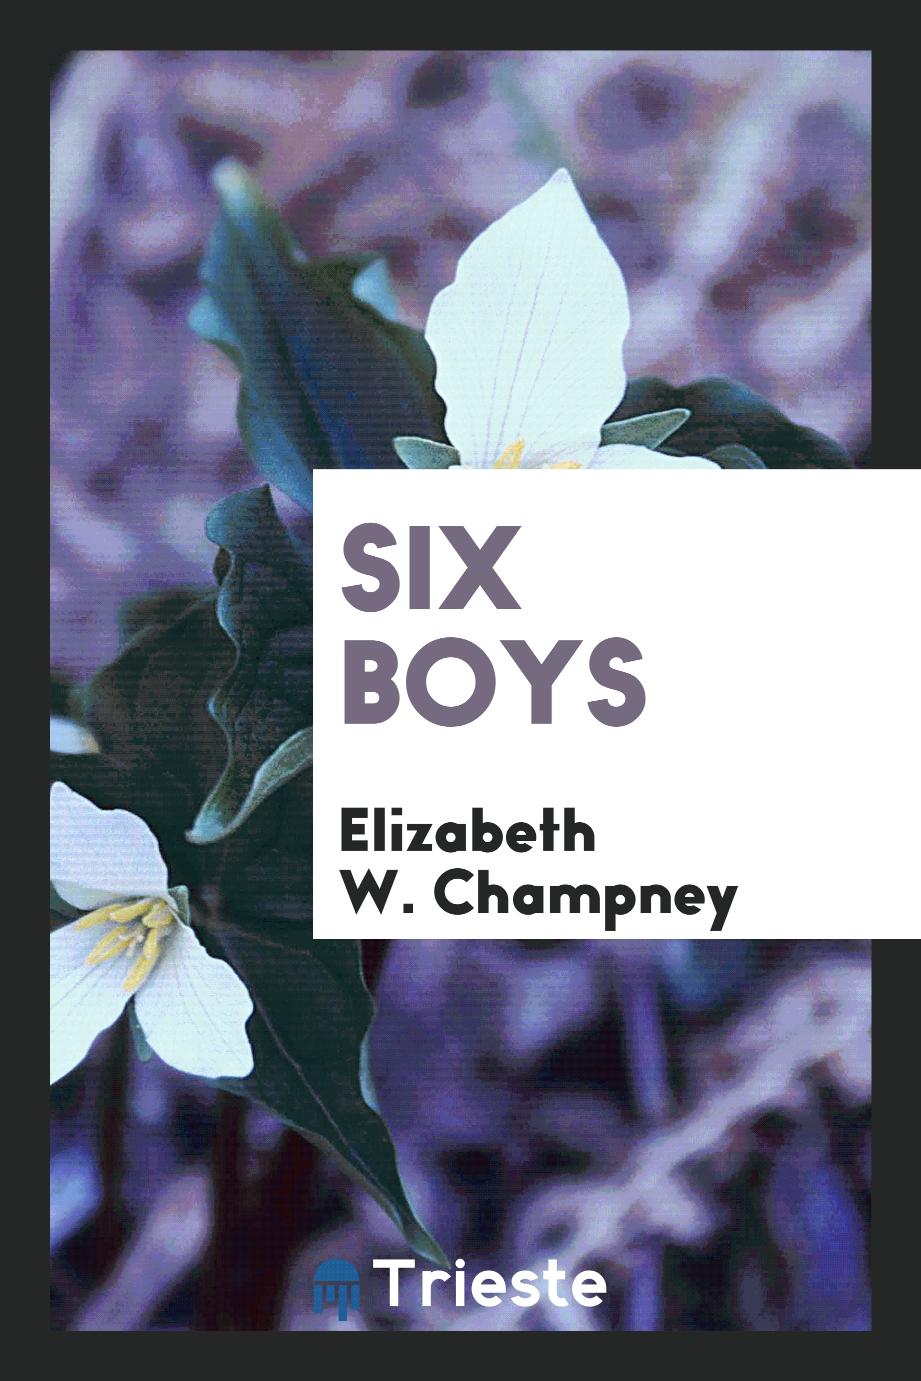 Six boys